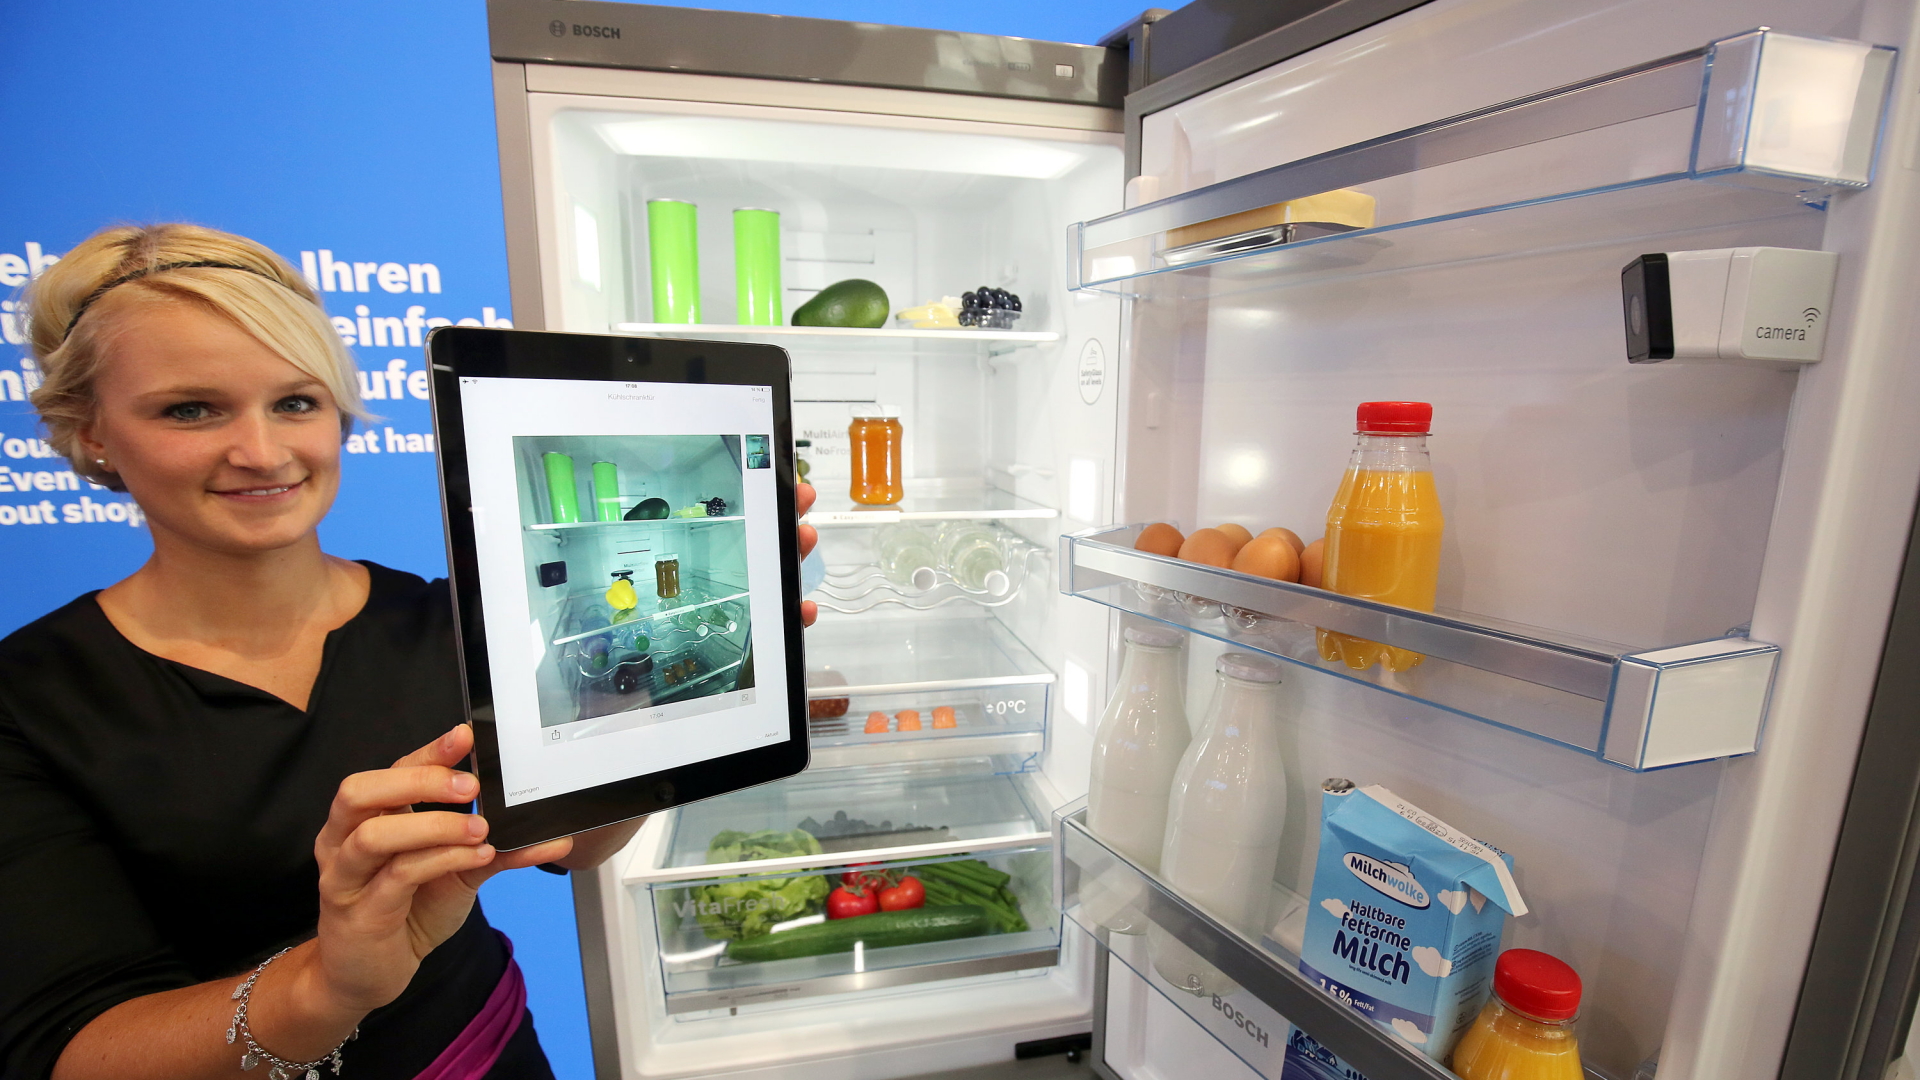 Eine Hostess präsentiert einen Kühlschrank mit eingebauter Kamera. | Bildquelle: dpa